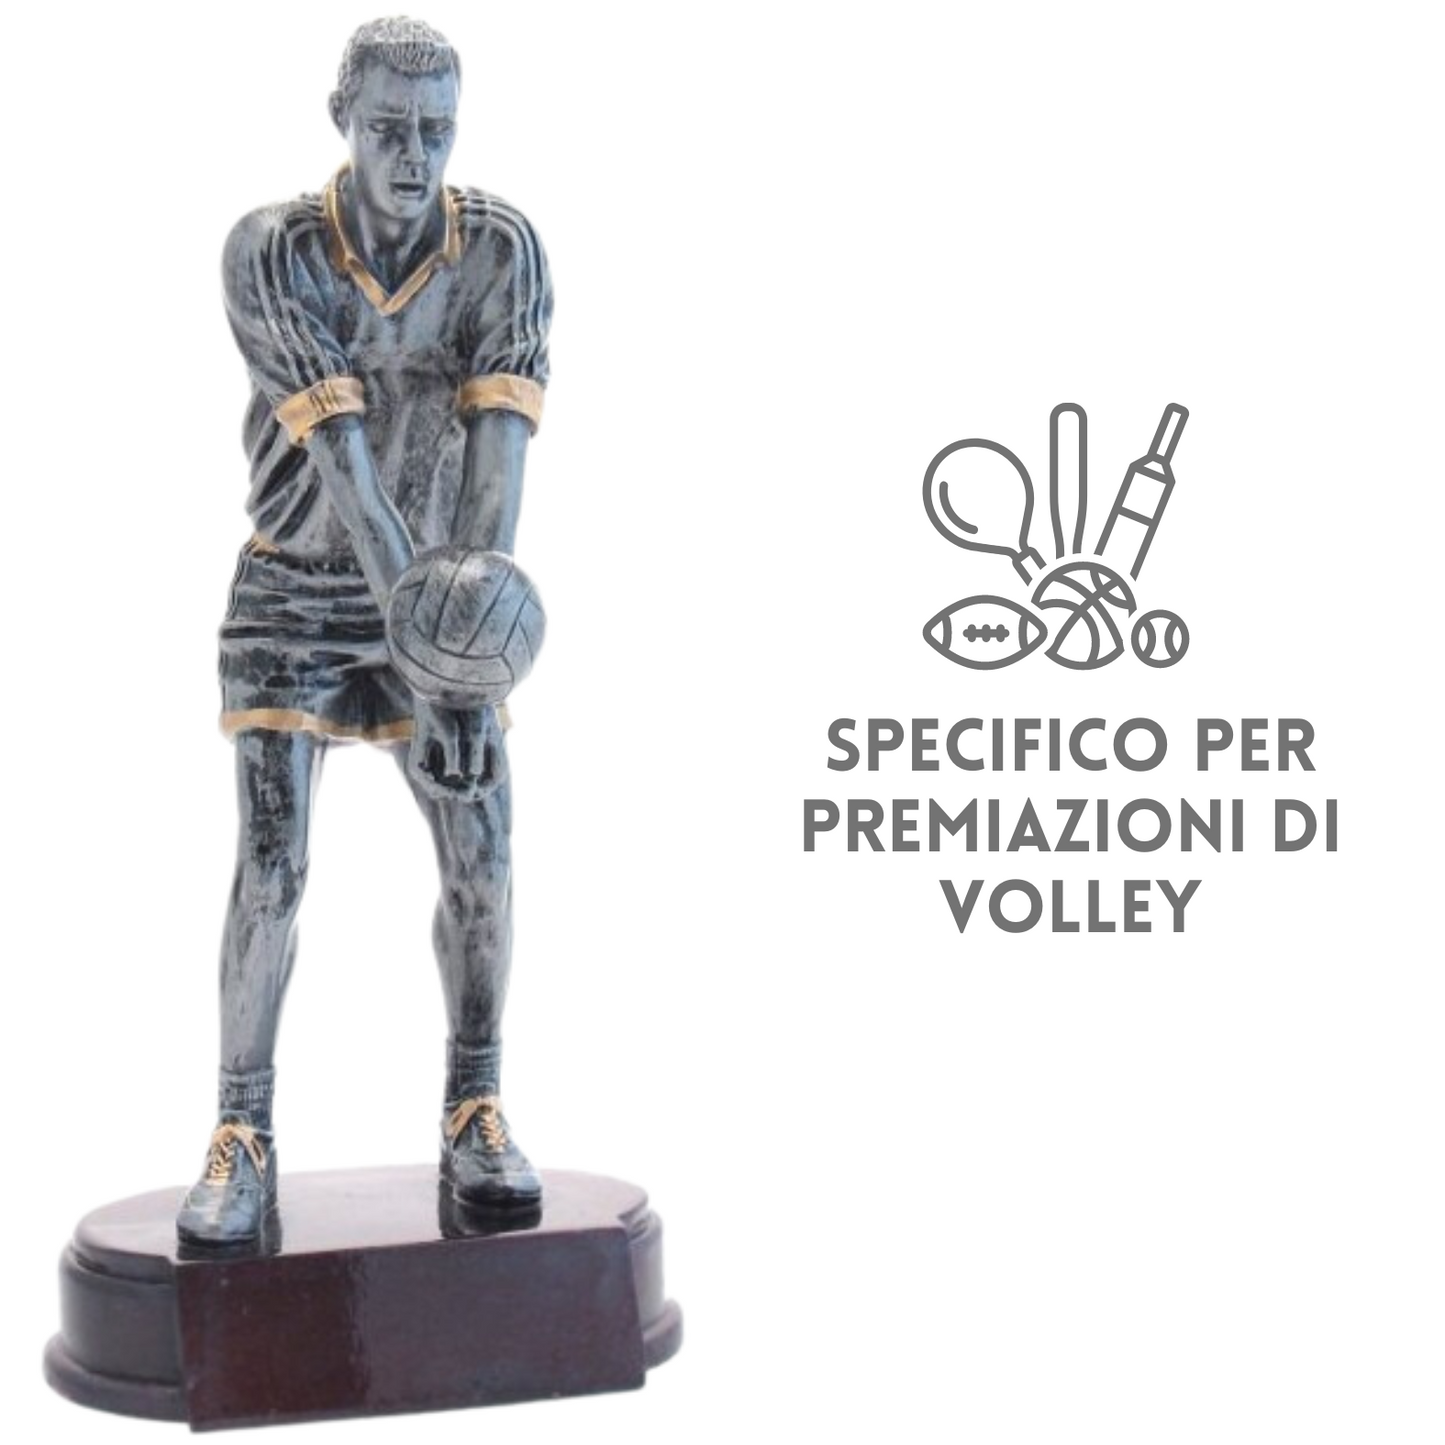 Premiazione personalizzata volley